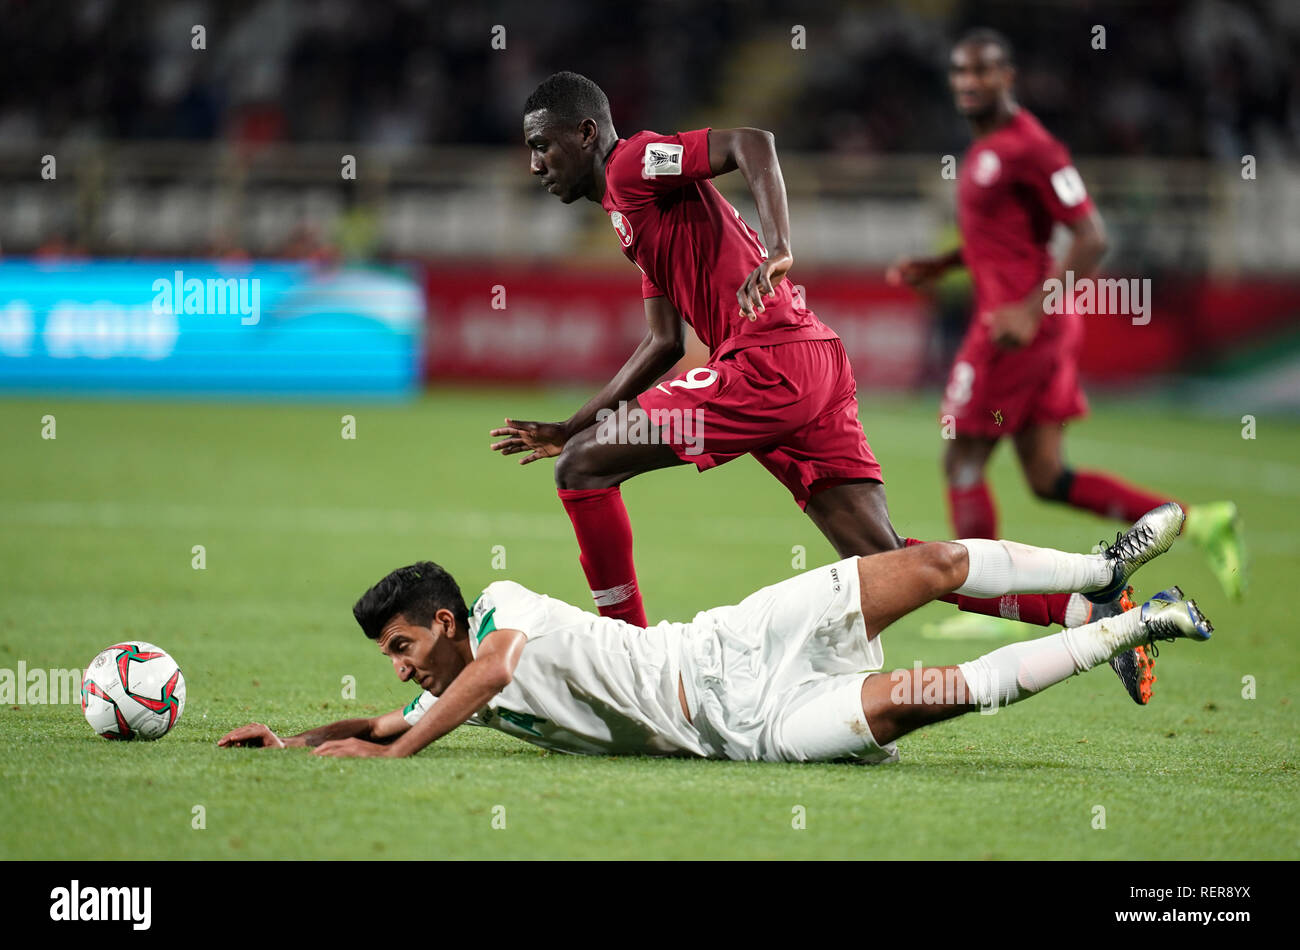 Januar 22, 2019: Almoez Ali von Katar fouling Amjad Attwan des Irak während Qatar v Irak im Zayed Sports City Stadium in Abu Dhabi, Vereinigte Arabische Emirate, AFC Asian Cup, asiatische Fußball-Meisterschaft. Ulrik Pedersen/CSM. Stockfoto